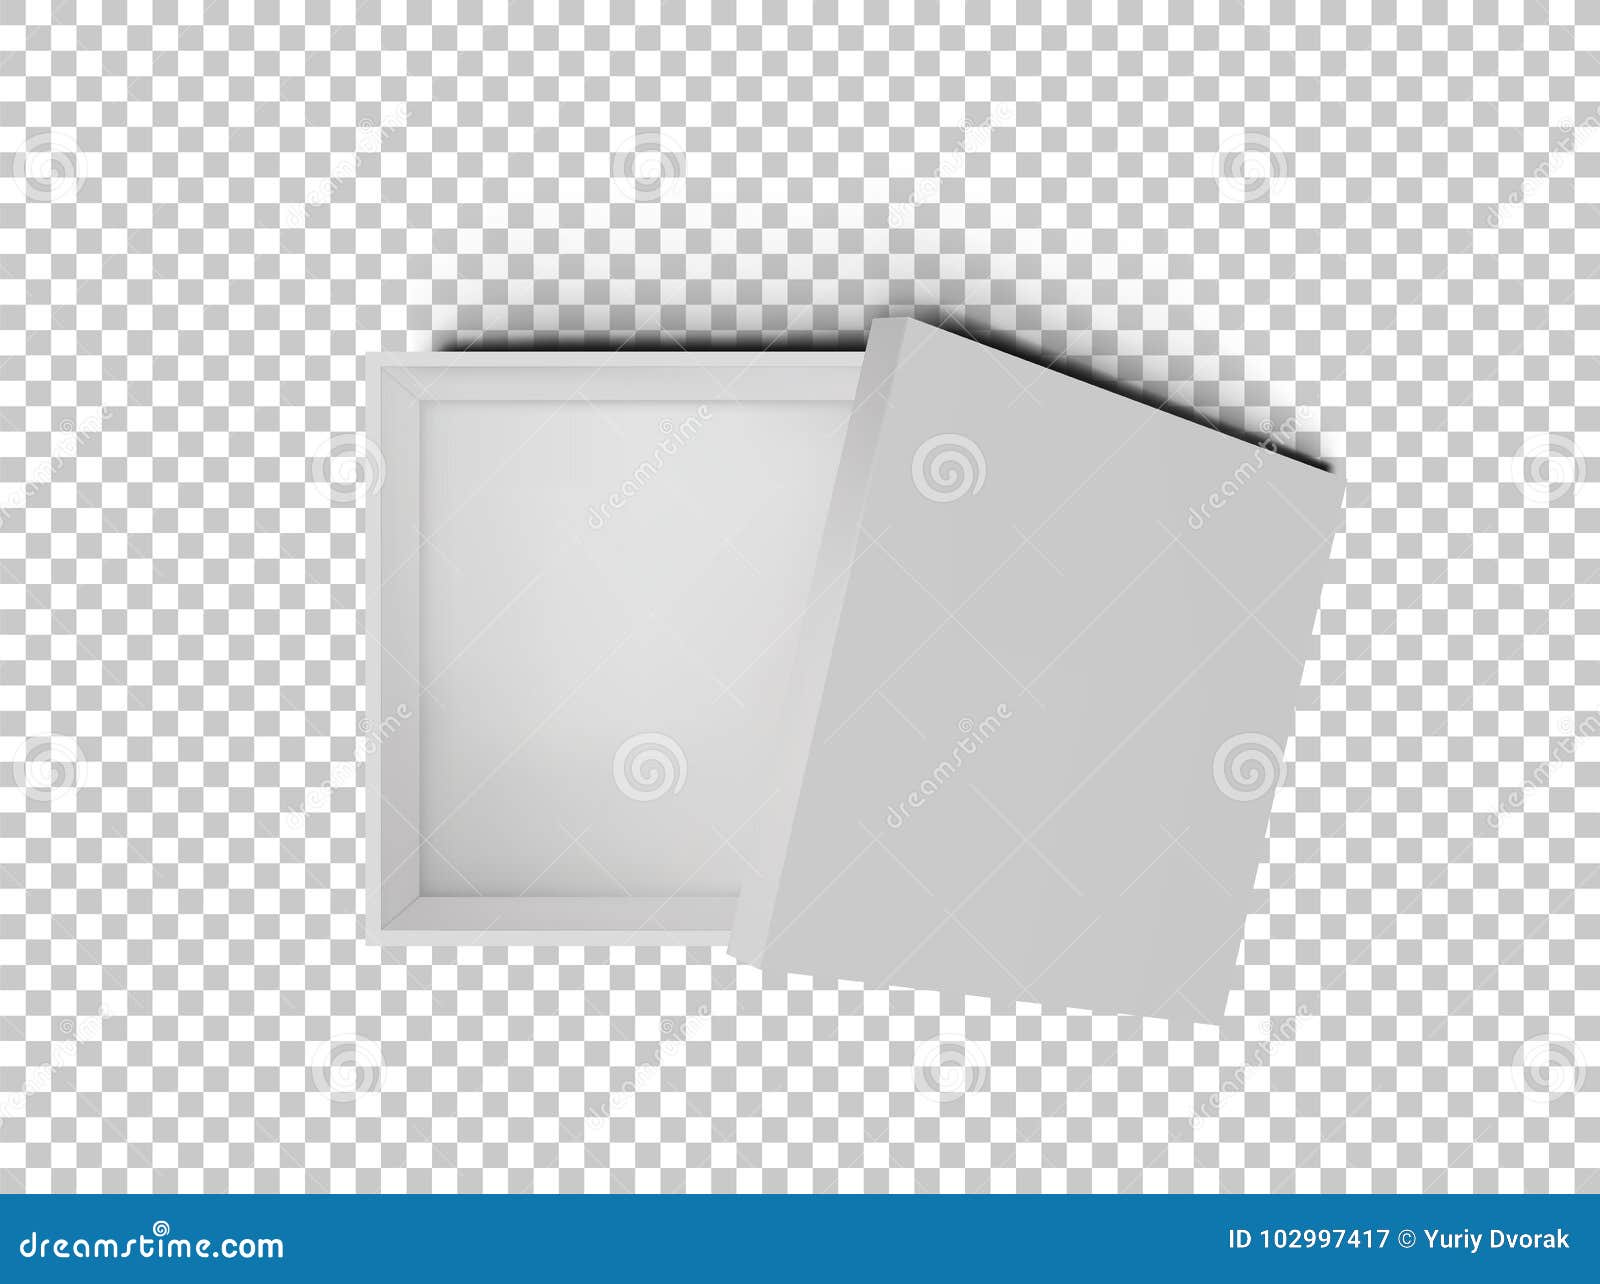 在透明背景顶视图隔绝的白色开放空的正方形纸板箱设计产品的大模型模板向量例证 插画包括有灰色 查出